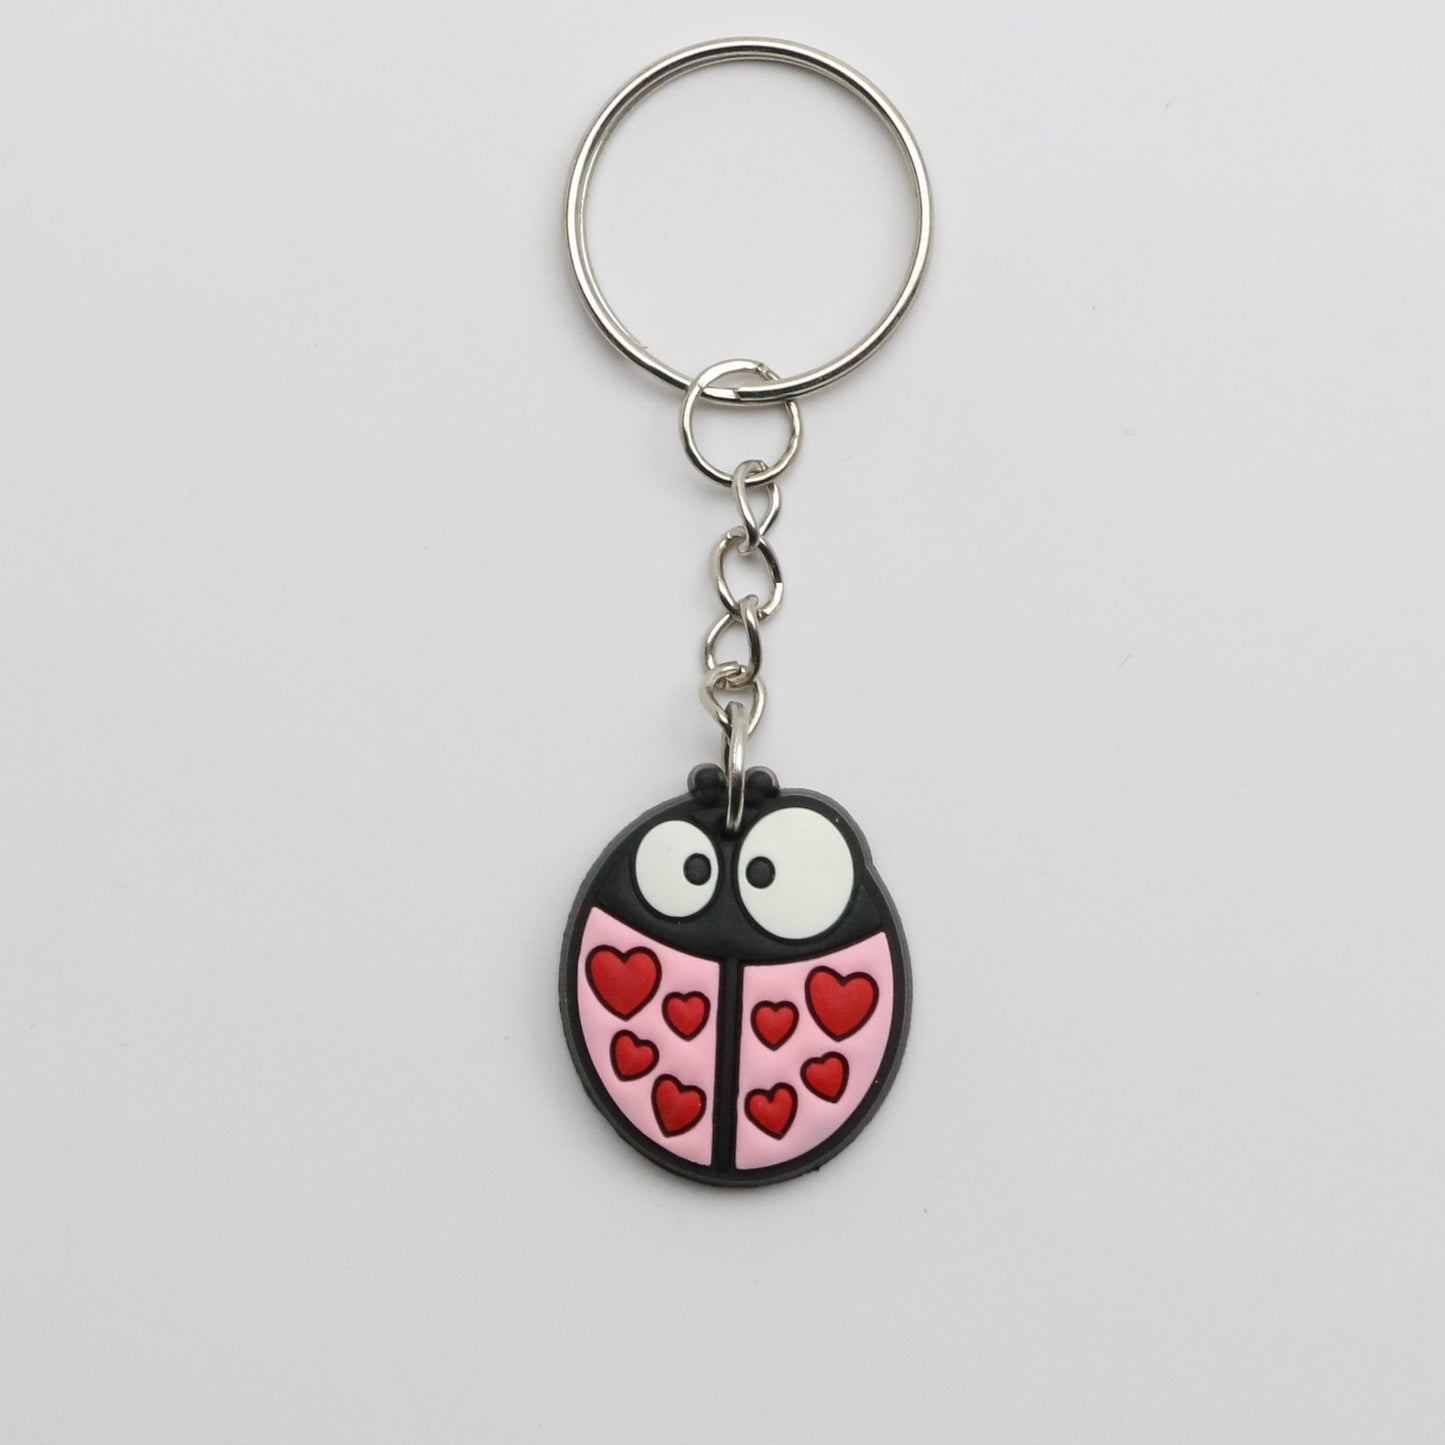 8100441K - Charm - Keychain - Ladybug / Hearts